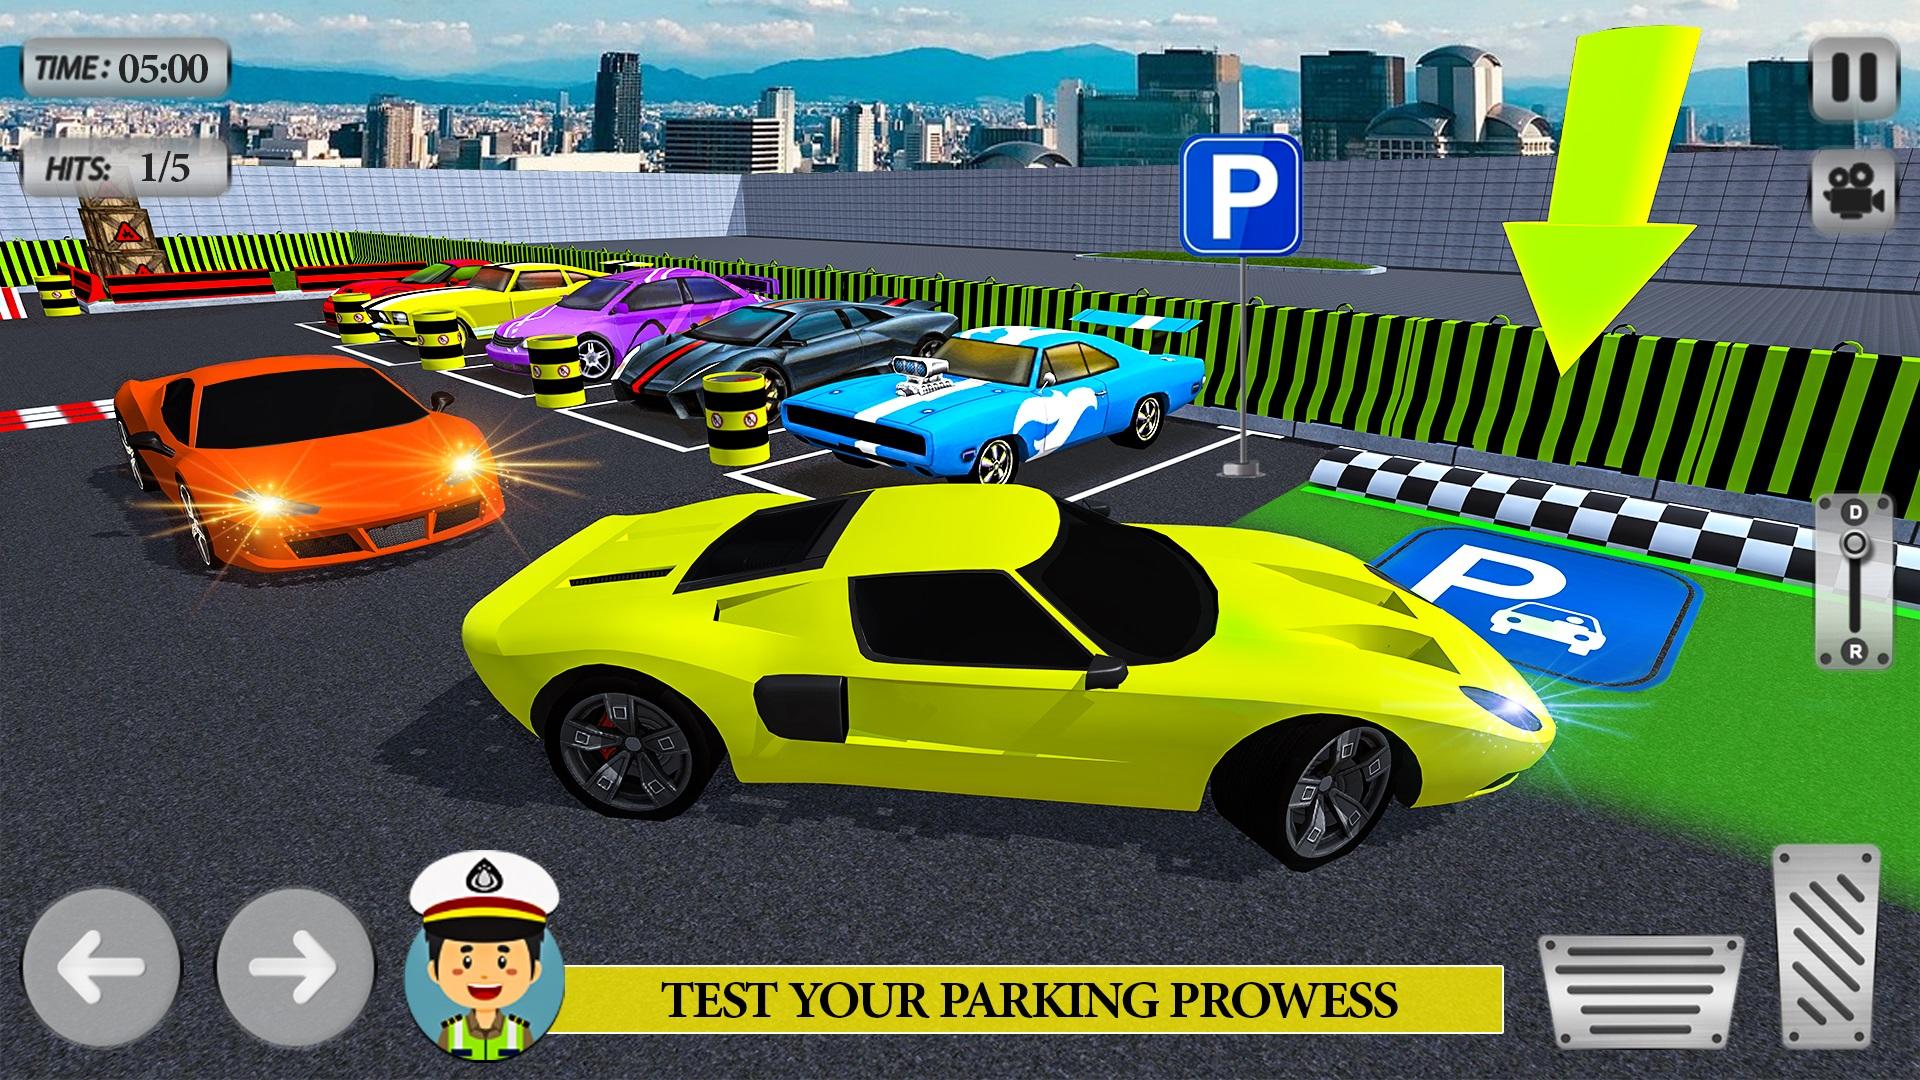 Park Your Car, Games